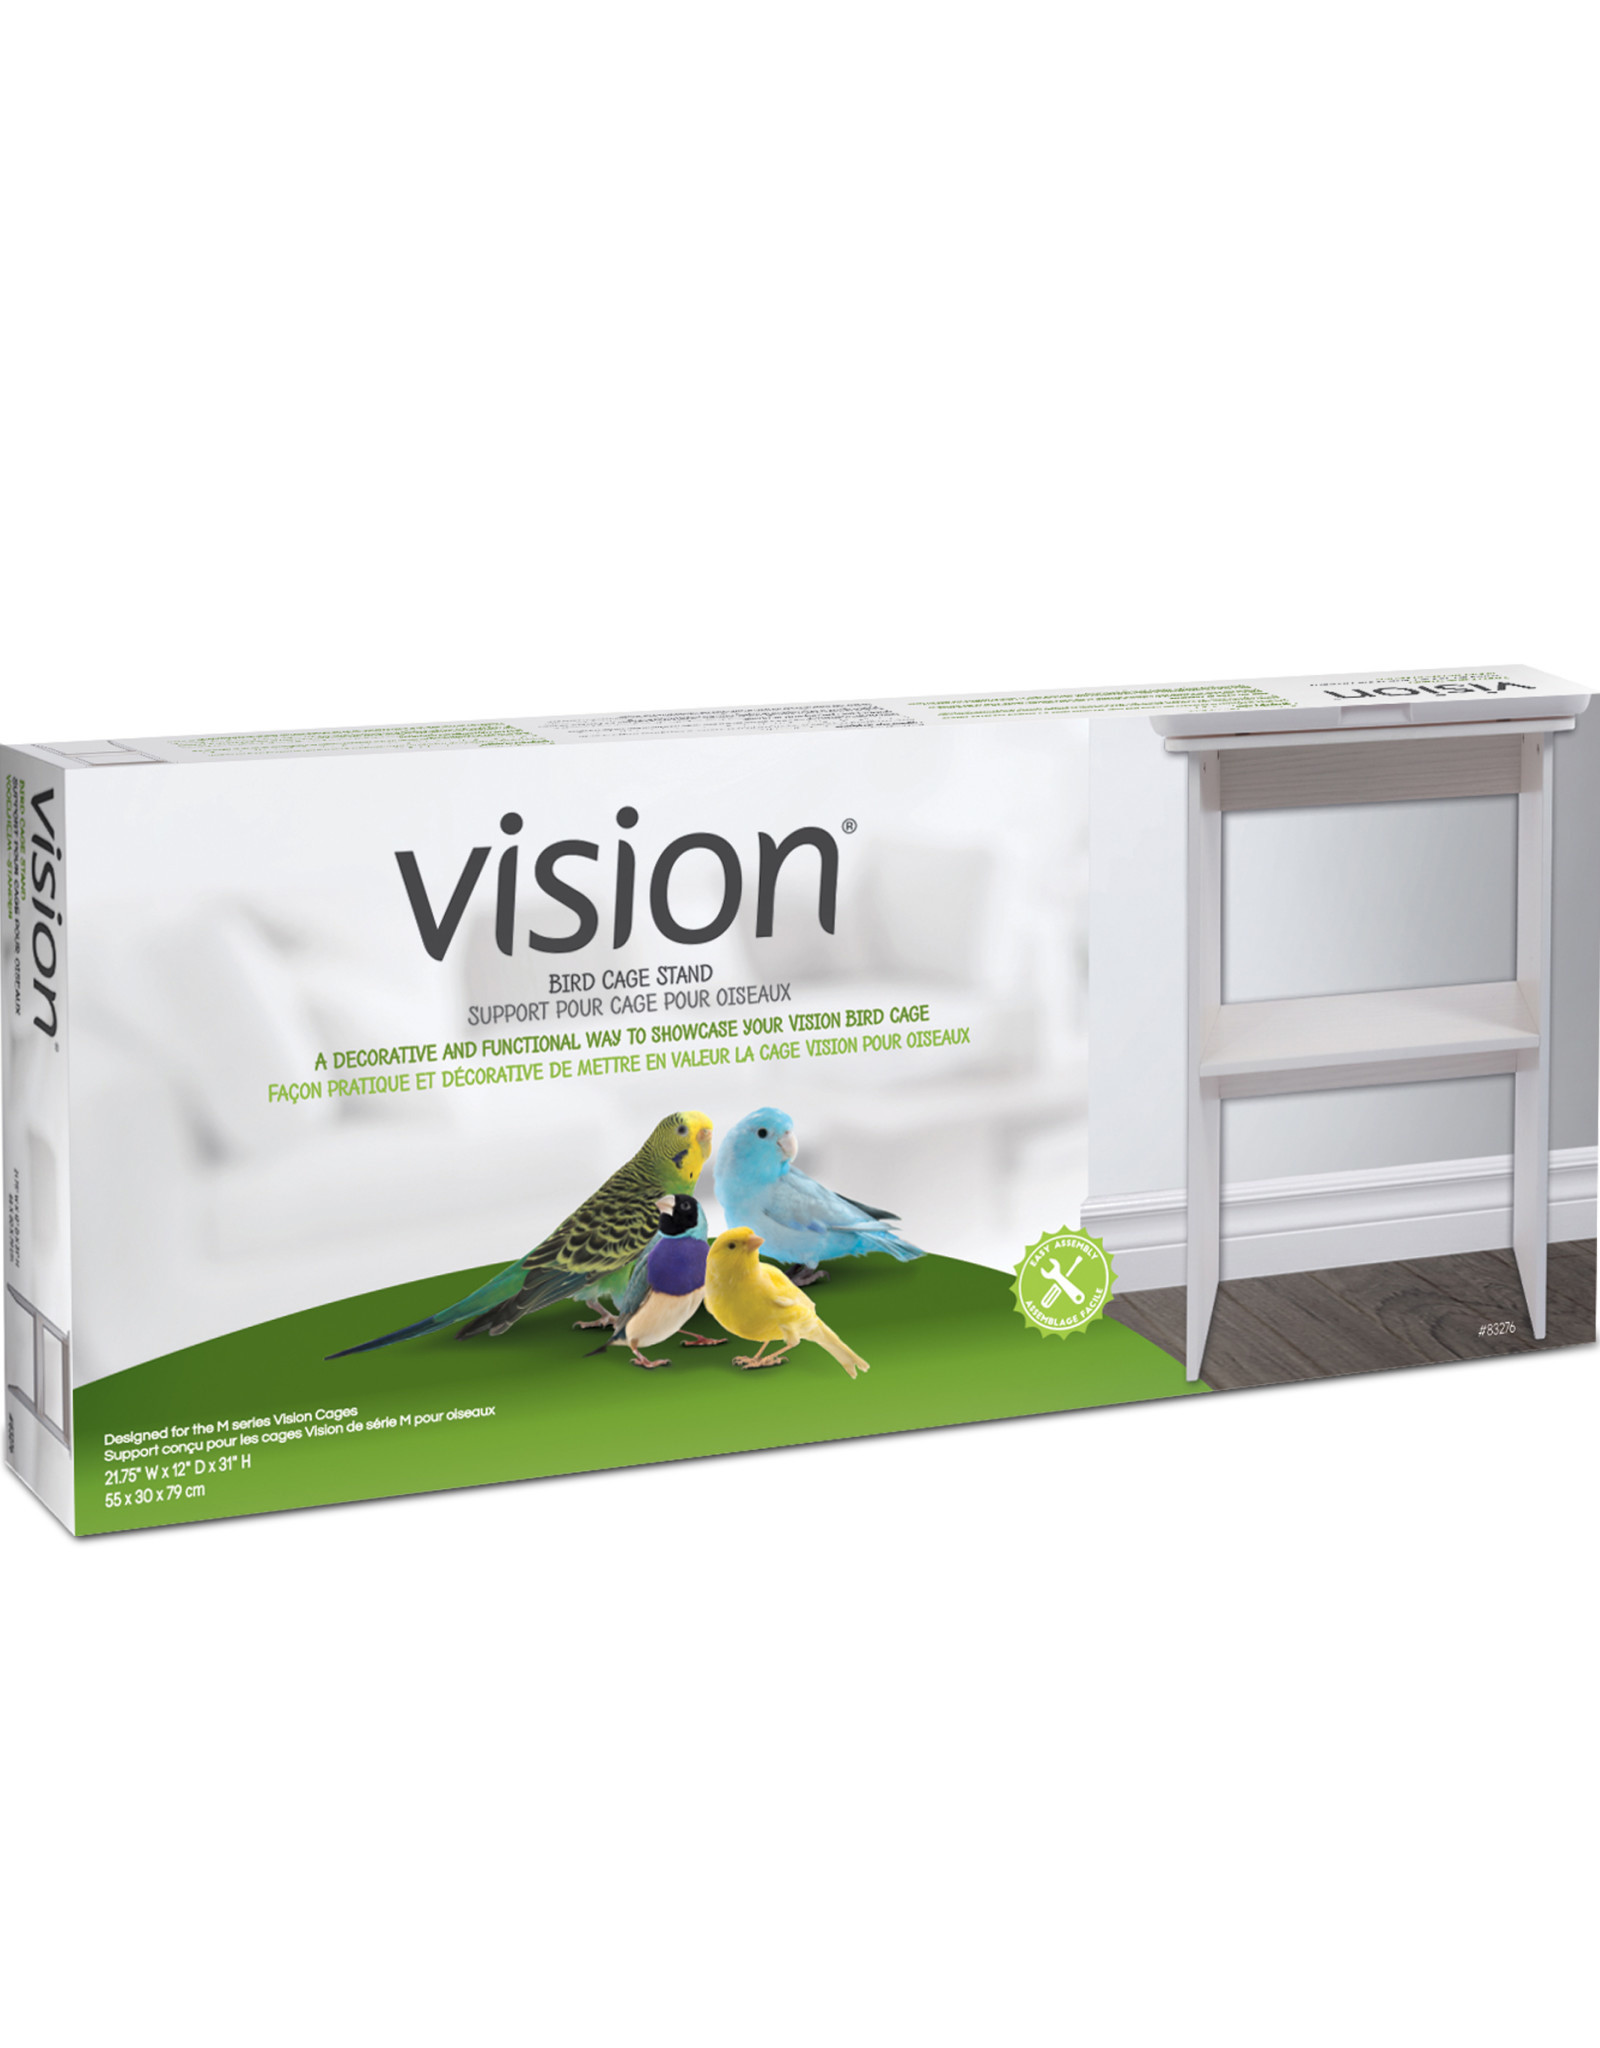 HAGEN VISION- 83276- BIRD CAGE STAND- 21.75X12X31- MEDIUM- WHITE